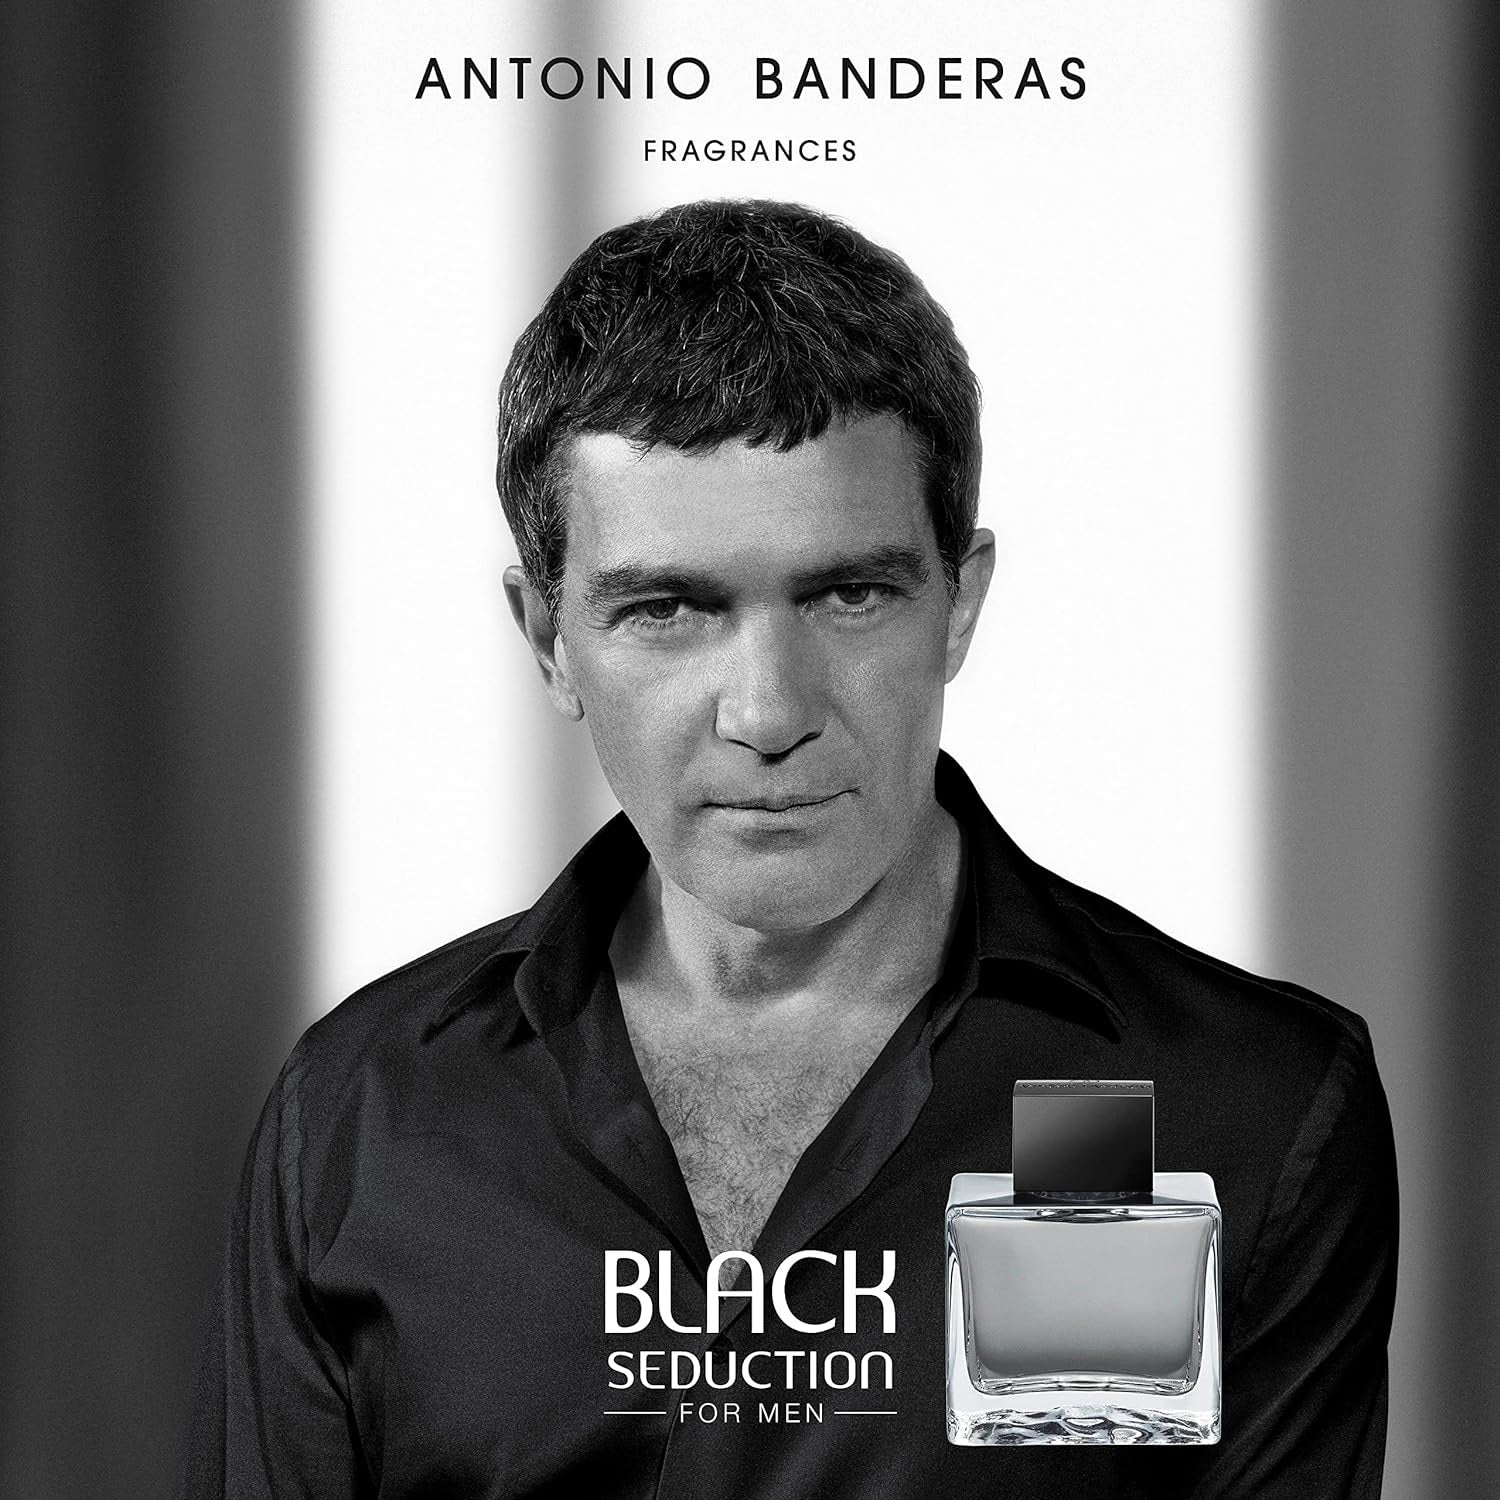 Antonio Banderas Seduction In Black Eau de Toilette 200ml Spray